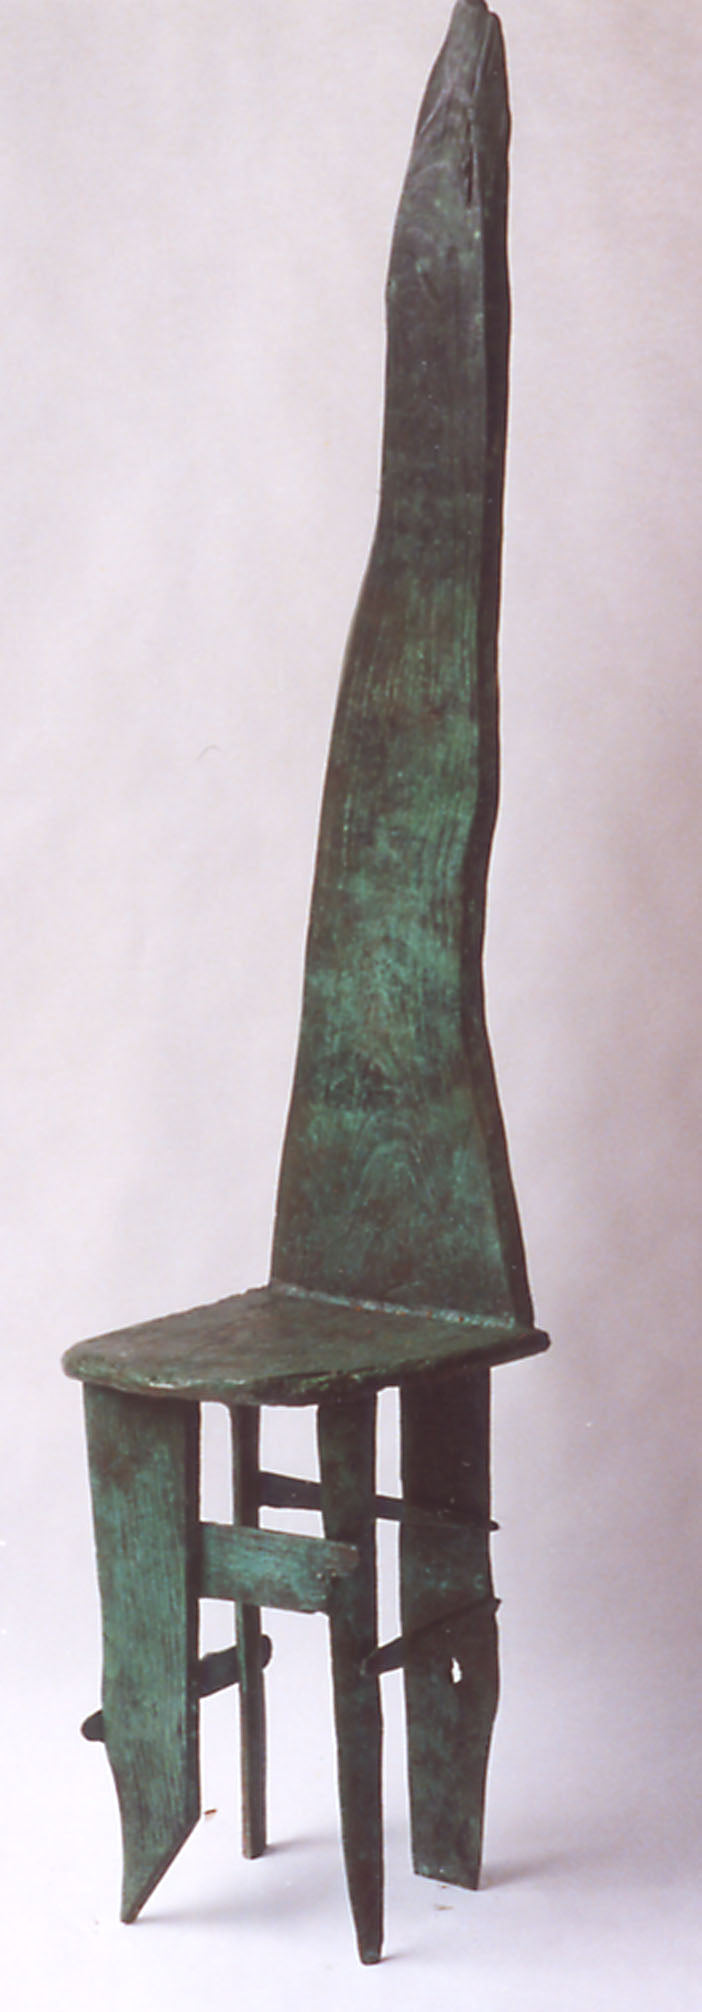 Sinclair, Helen - Bronze Chair